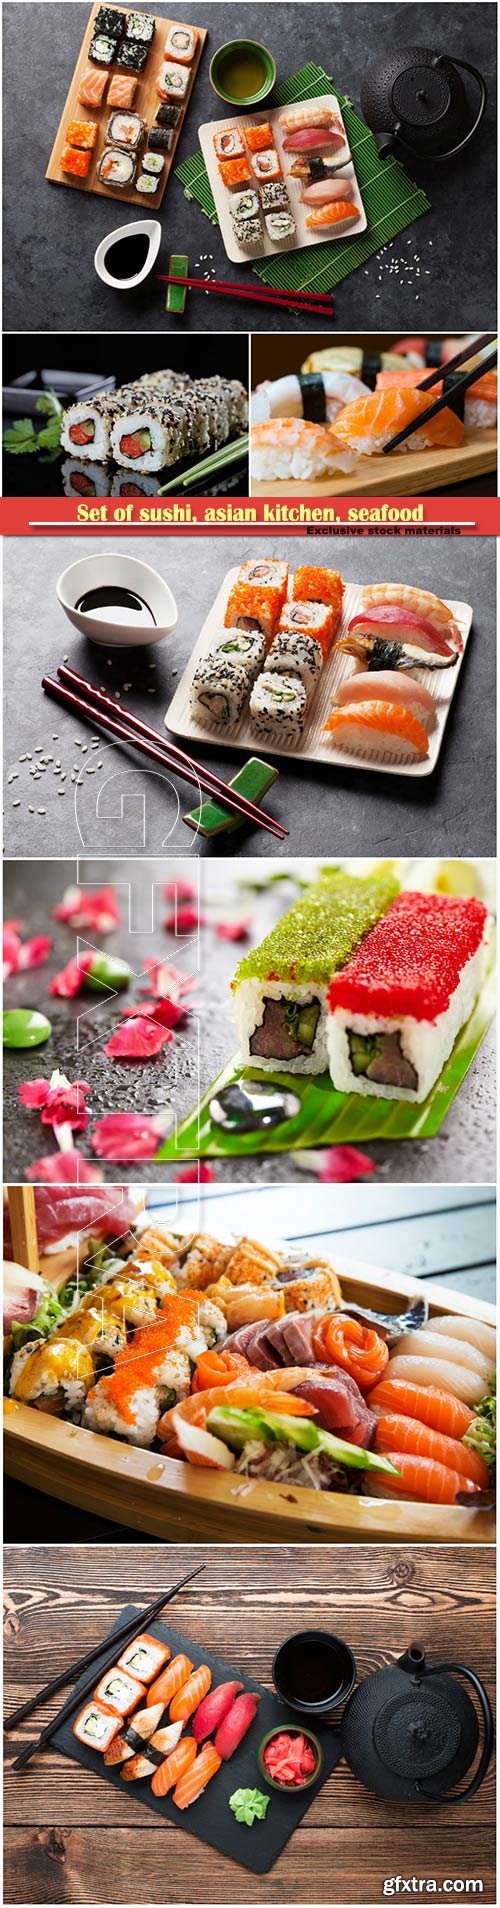 Set of sushi, asian kitchen, seafood